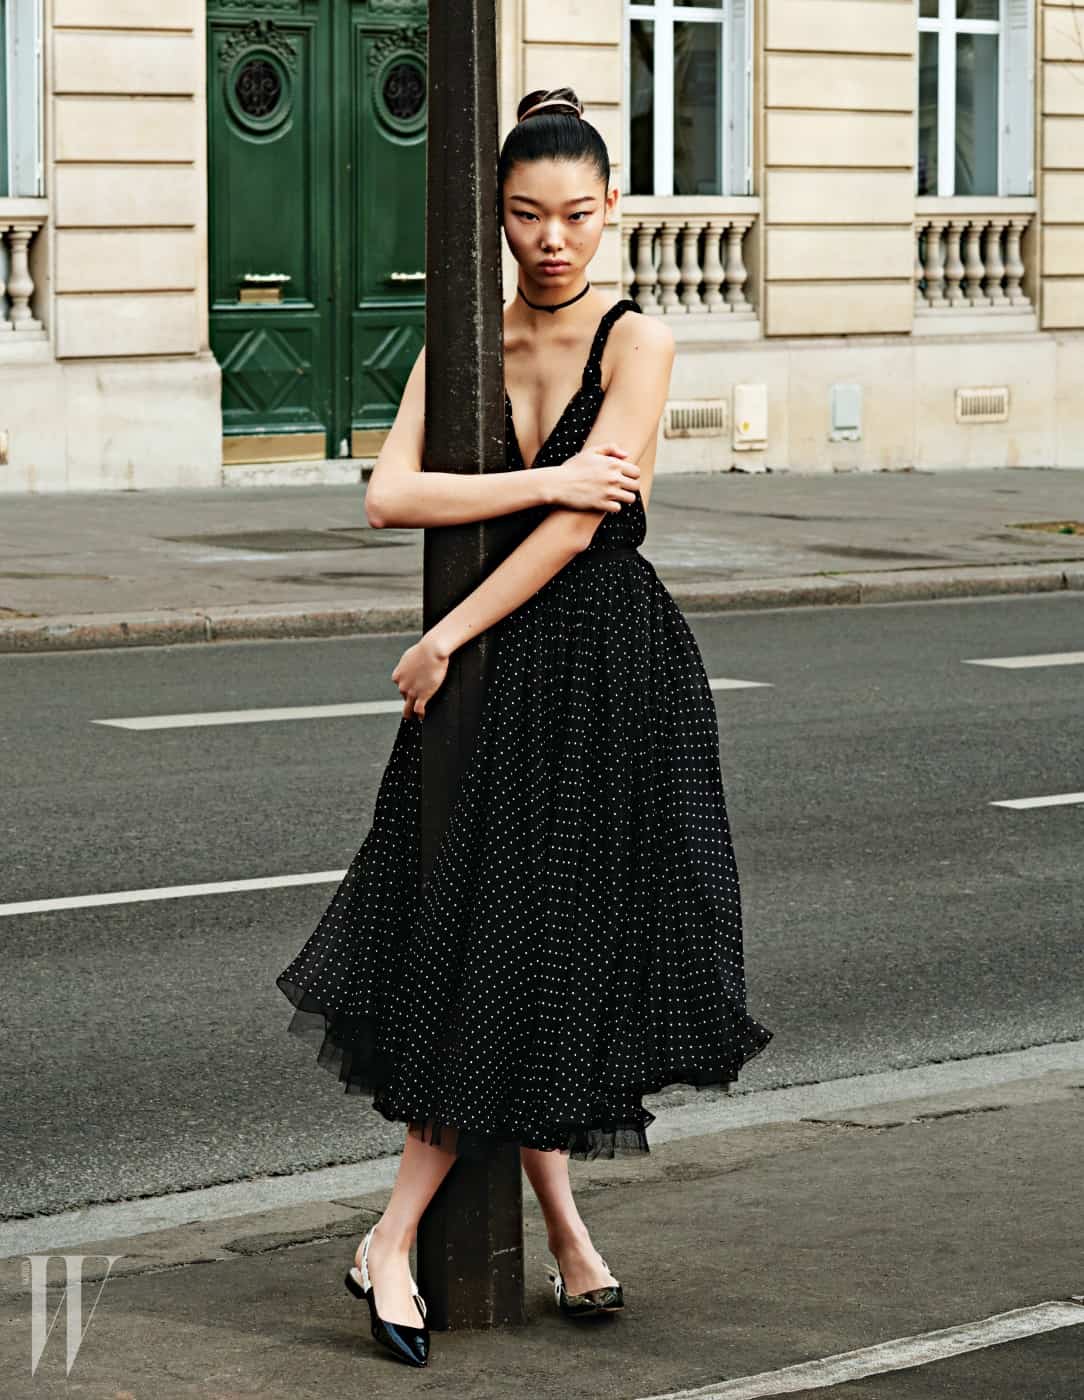 네크라인이 깊게 파인 잔잔한 물방울 무늬 드레스와 플랫 슈즈, 초커는 모두 Dior 제품.